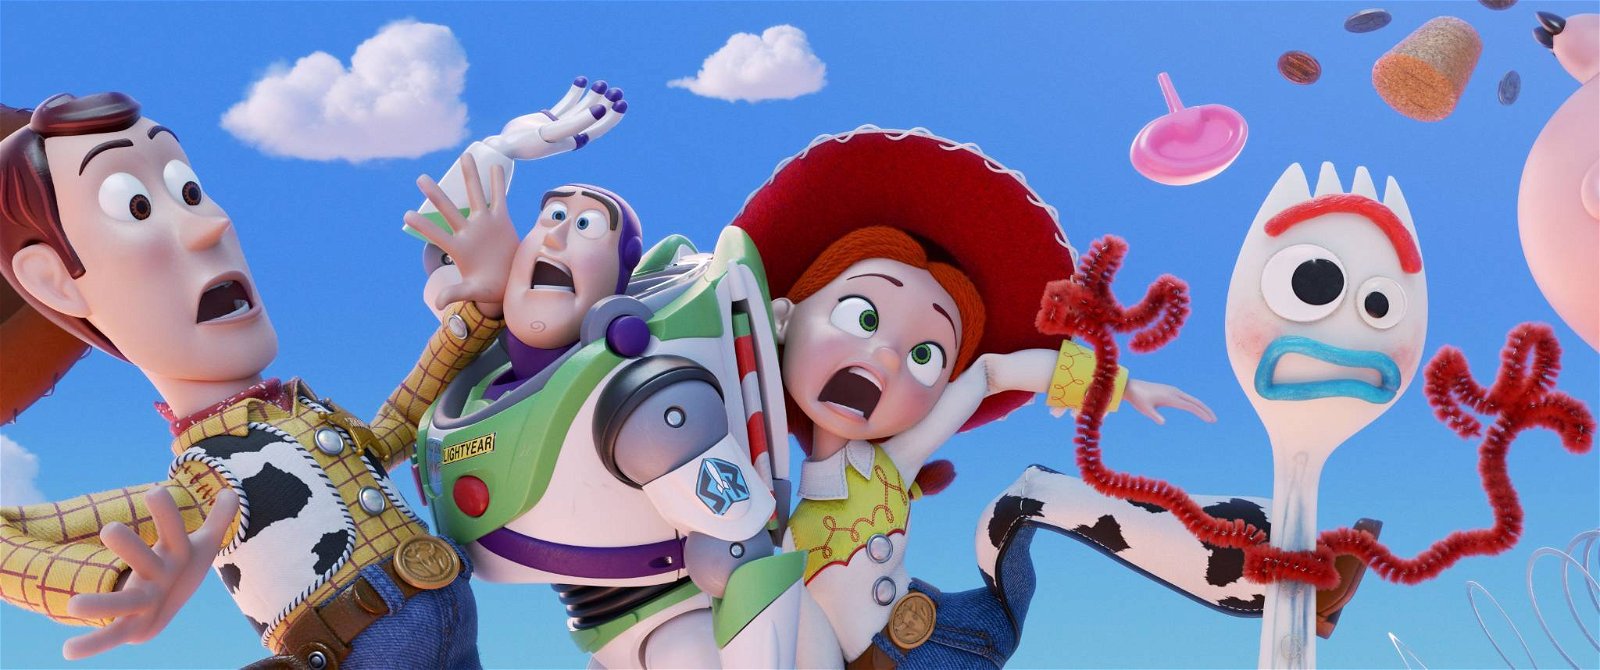 Immagine di Toy Story 4 - la recensione di un nuovo capolavoro Pixar